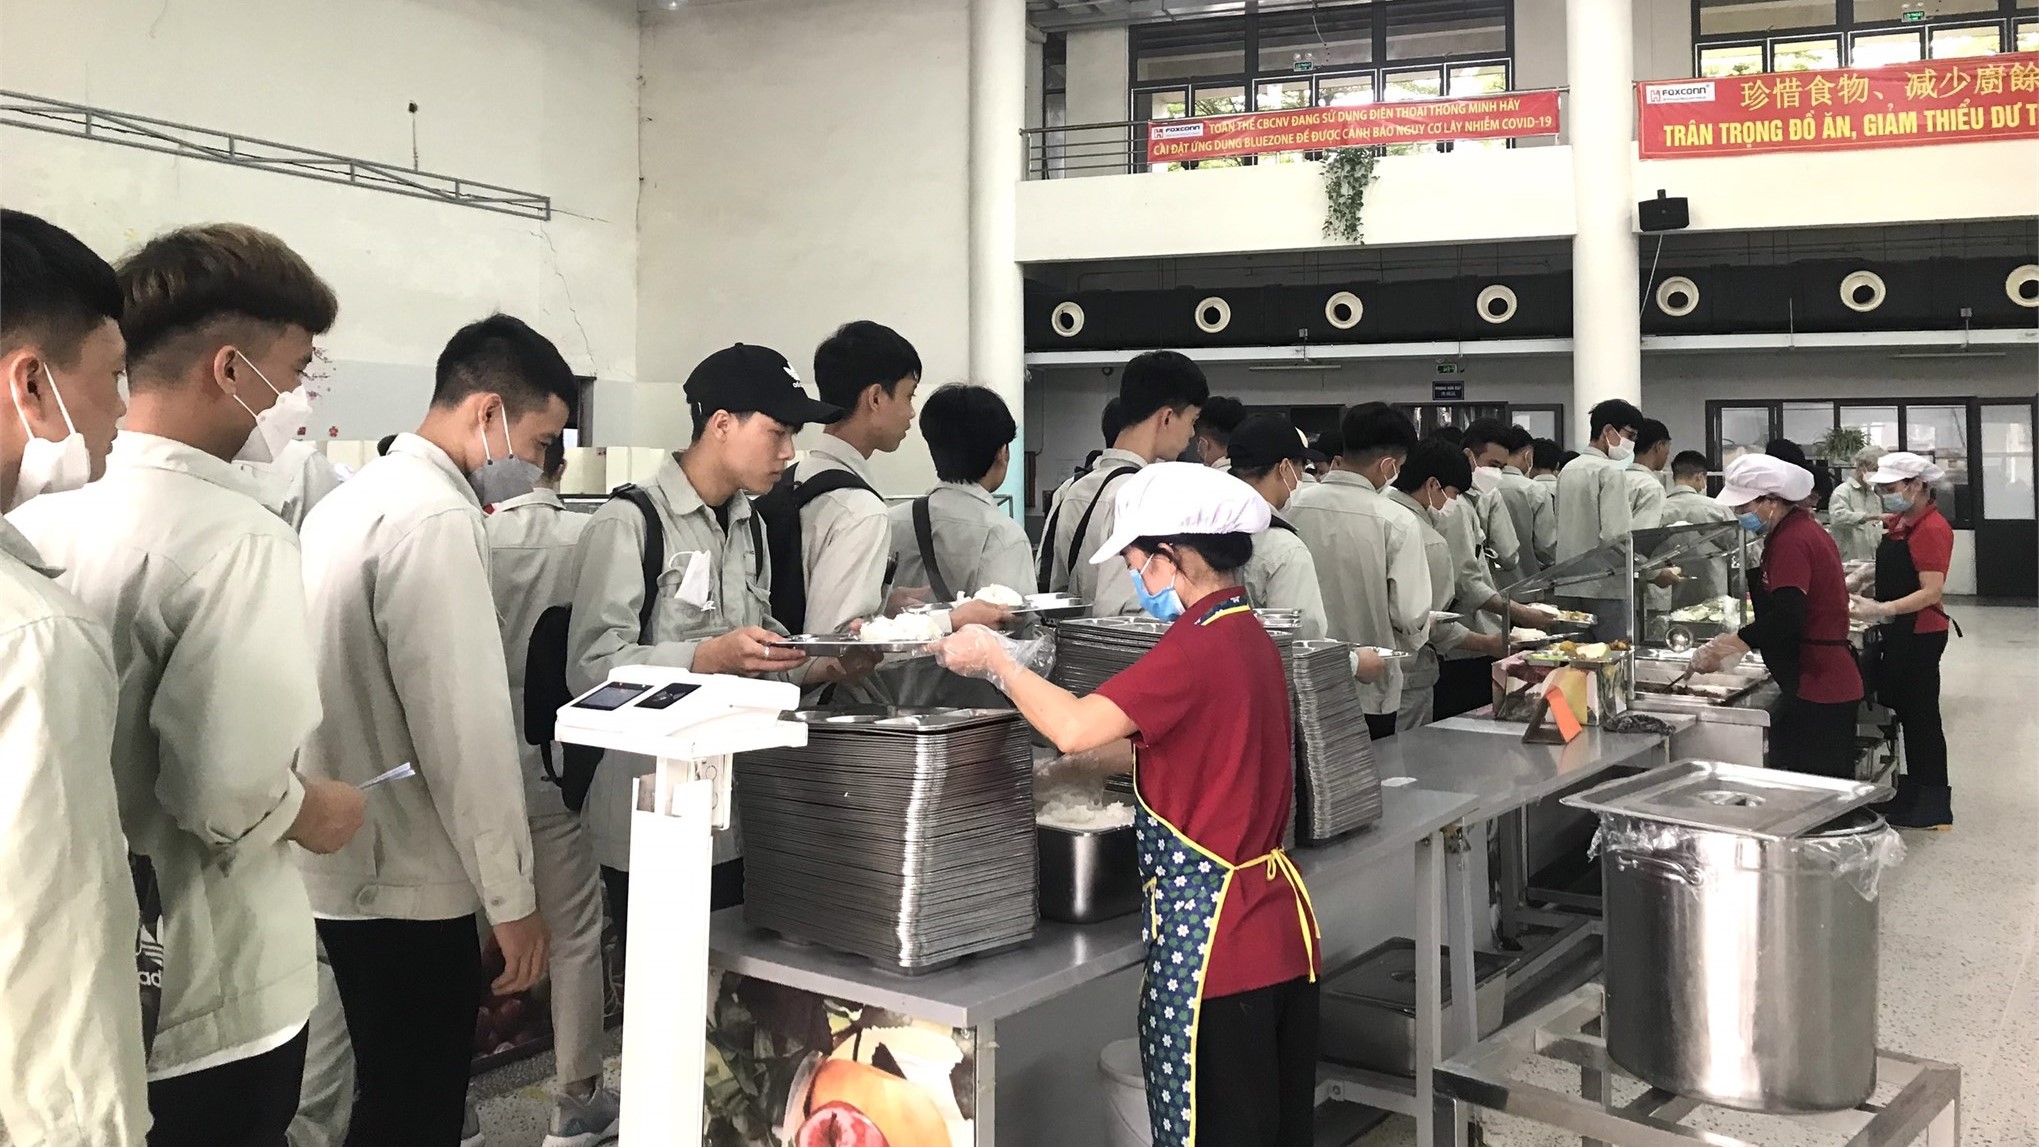 Hơn 100 sinh viên Trung tâm Việt Nhật trải nghiệm môi trường làm việc tại Công ty Tập đoàn Khoa học Kĩ thuật Hồng Hải (Foxconn)